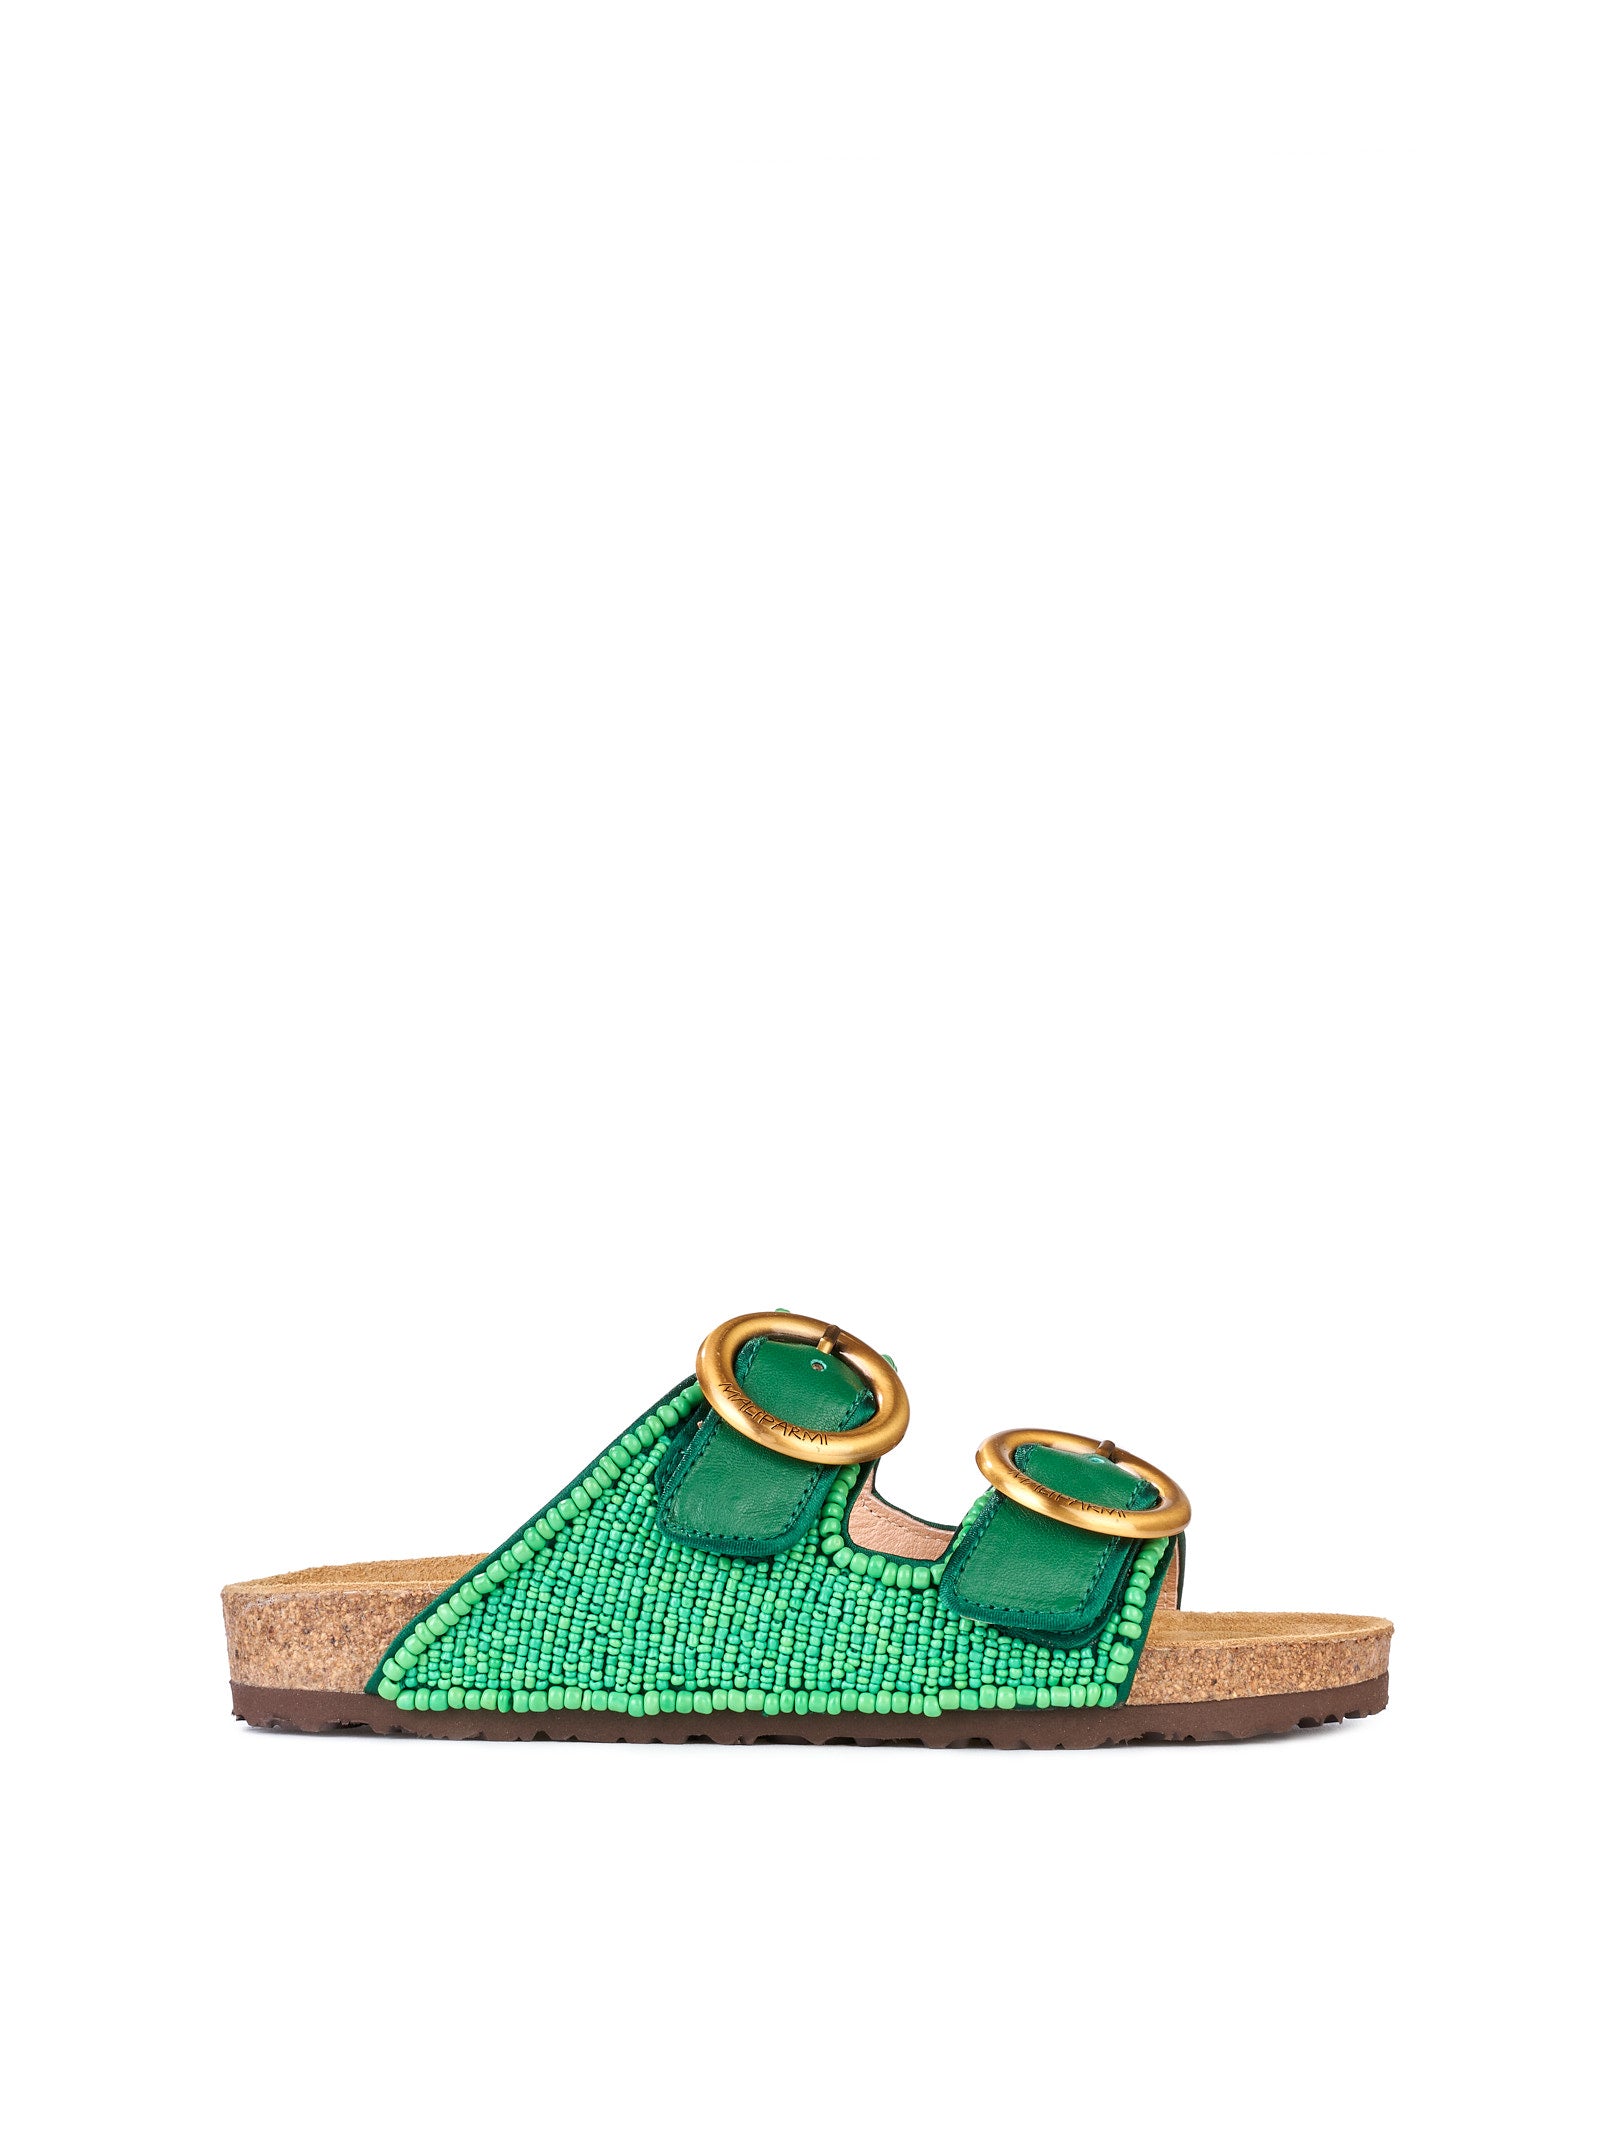 Sandalo MALIPARMI Ciabatta con perline
Verde